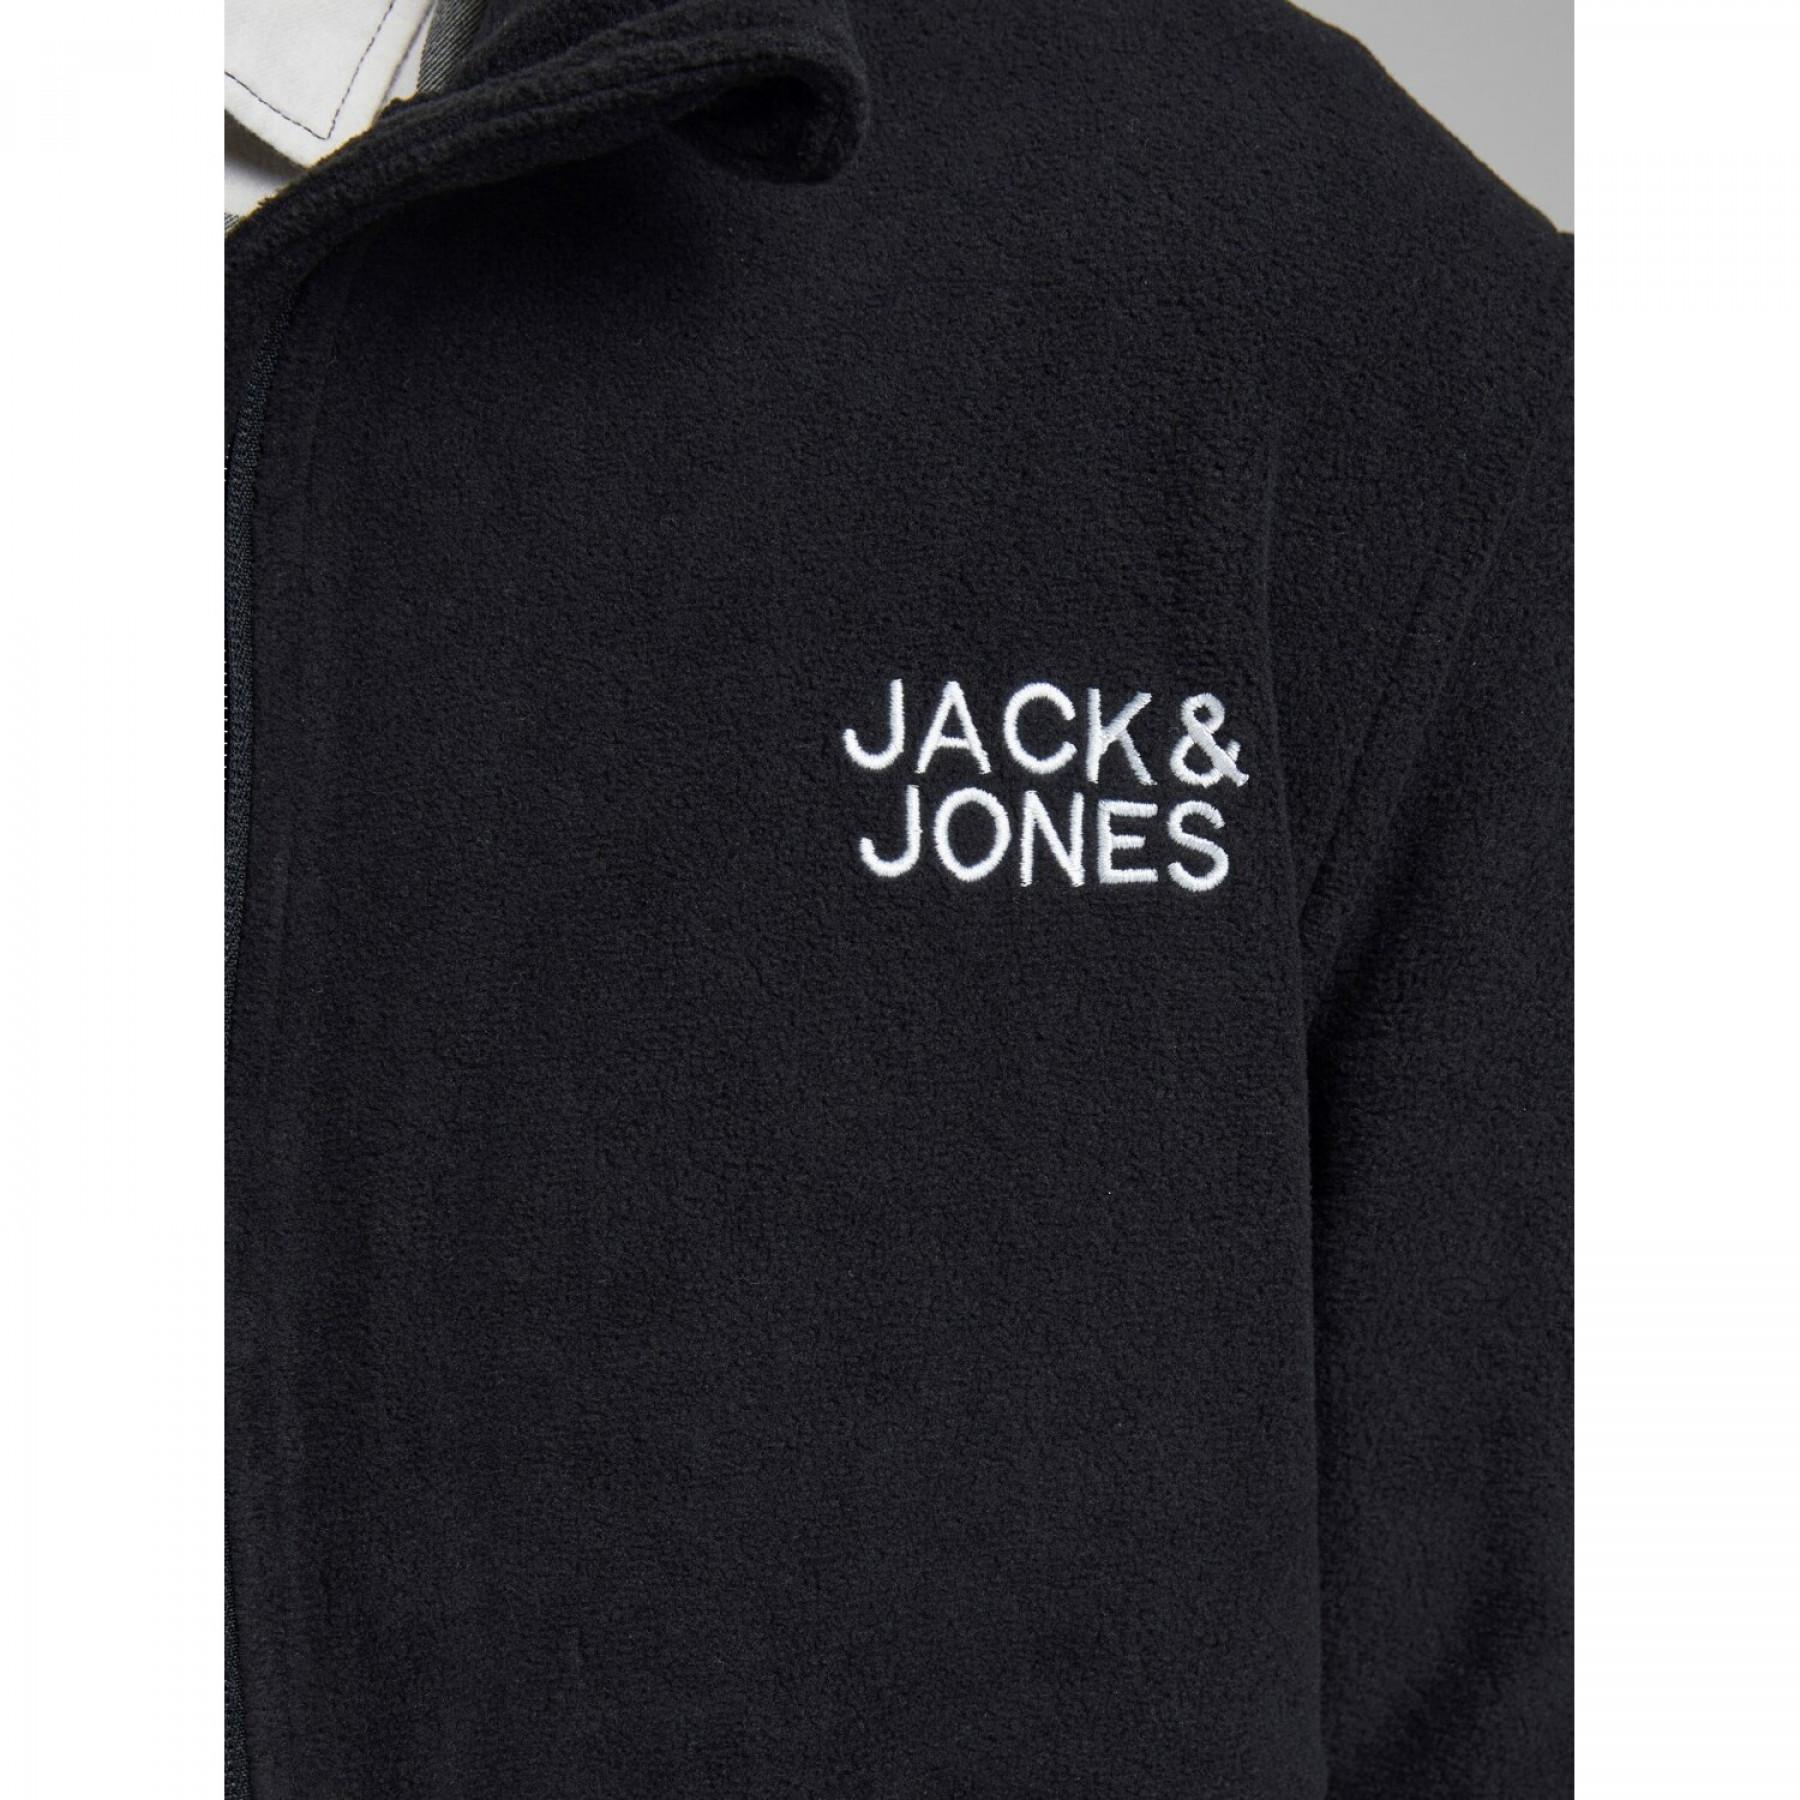 Jas Jack & Jones Hype Fleece